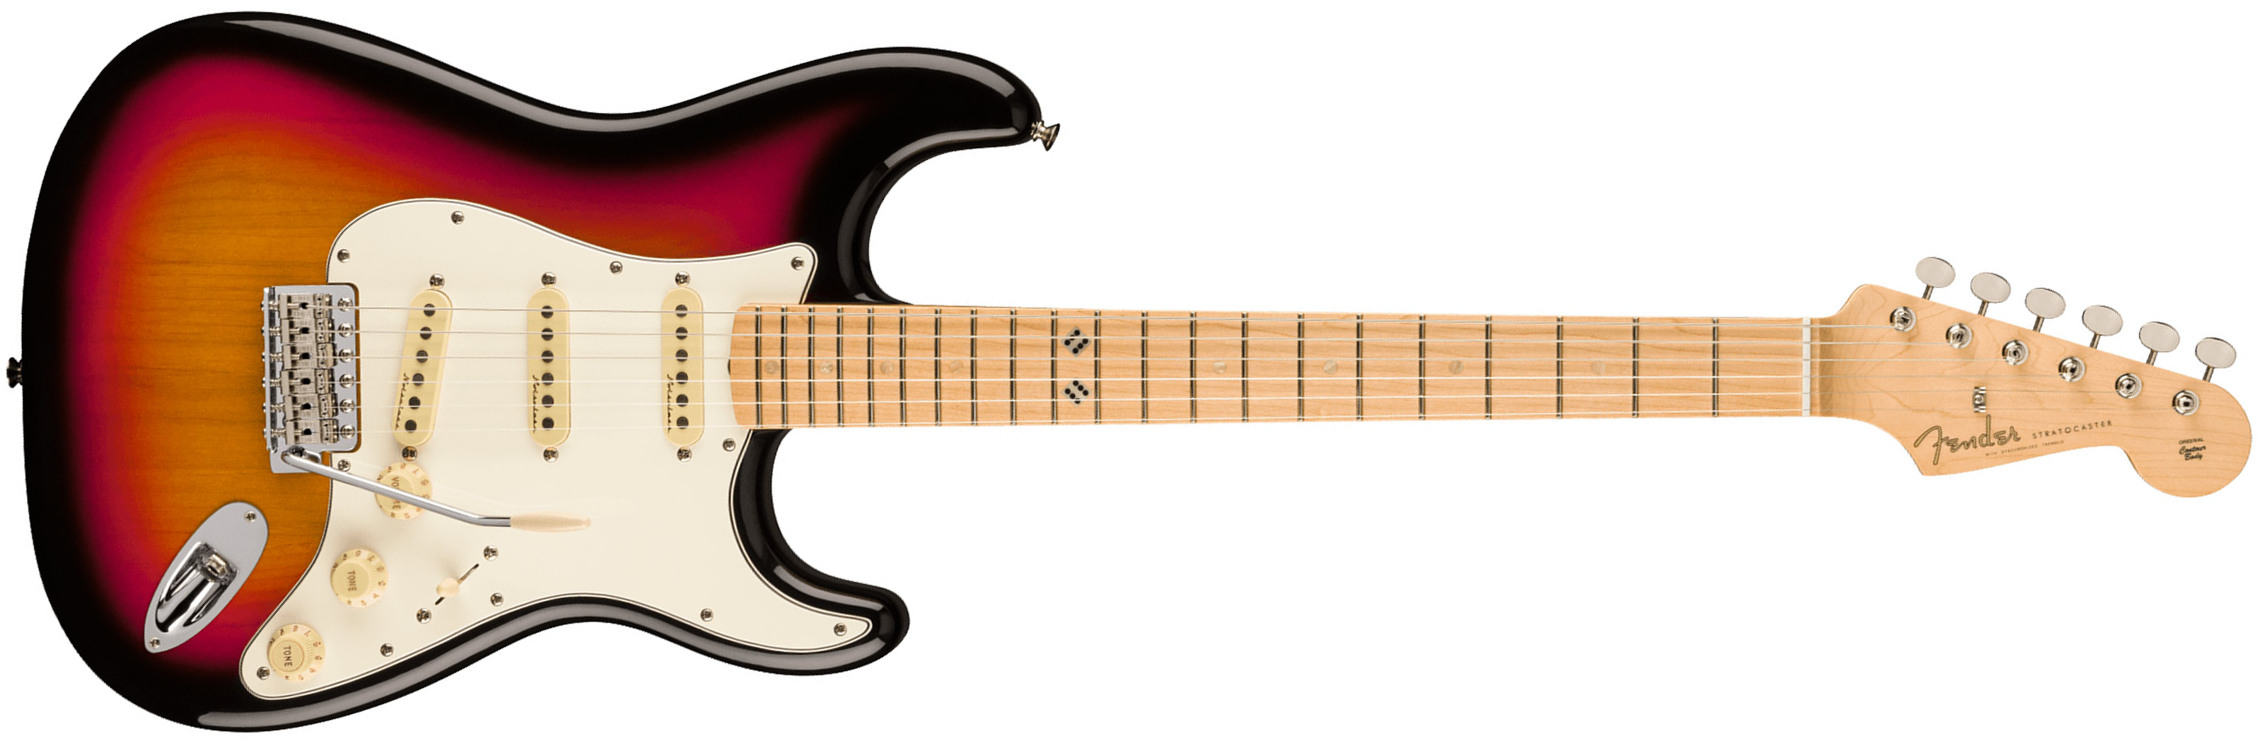 Fender Steve Lacy Strat People Pleaser Mex Signature 3s Trem Mn - Chaos Burst - Guitare Électrique Forme Str - Main picture